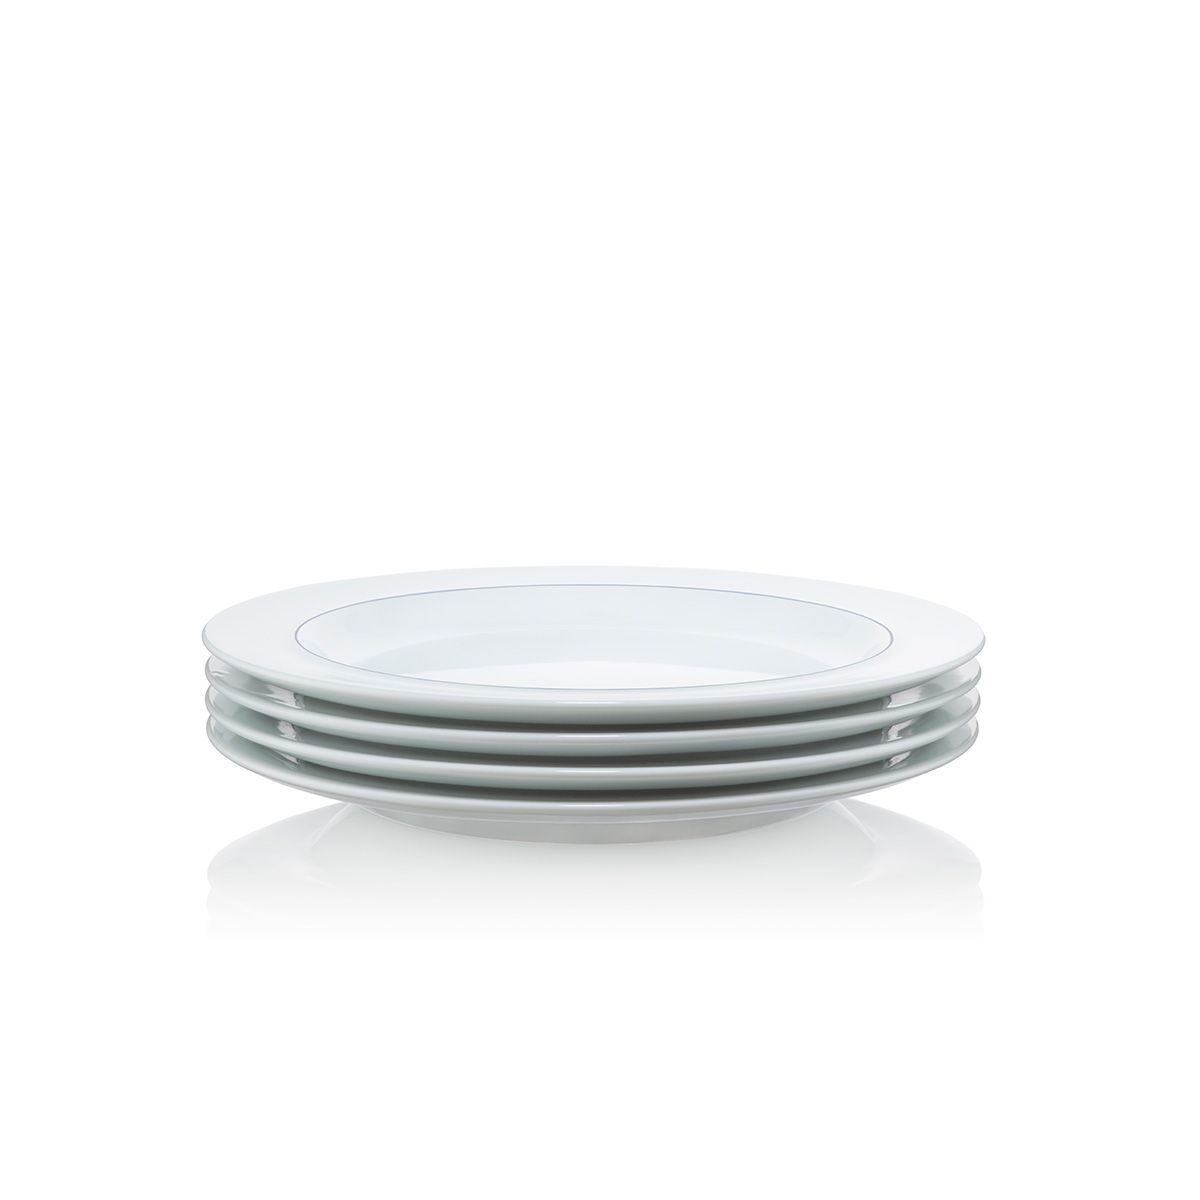 Bodum Blå Lunch Plate Porcelain, 4 Pcs.